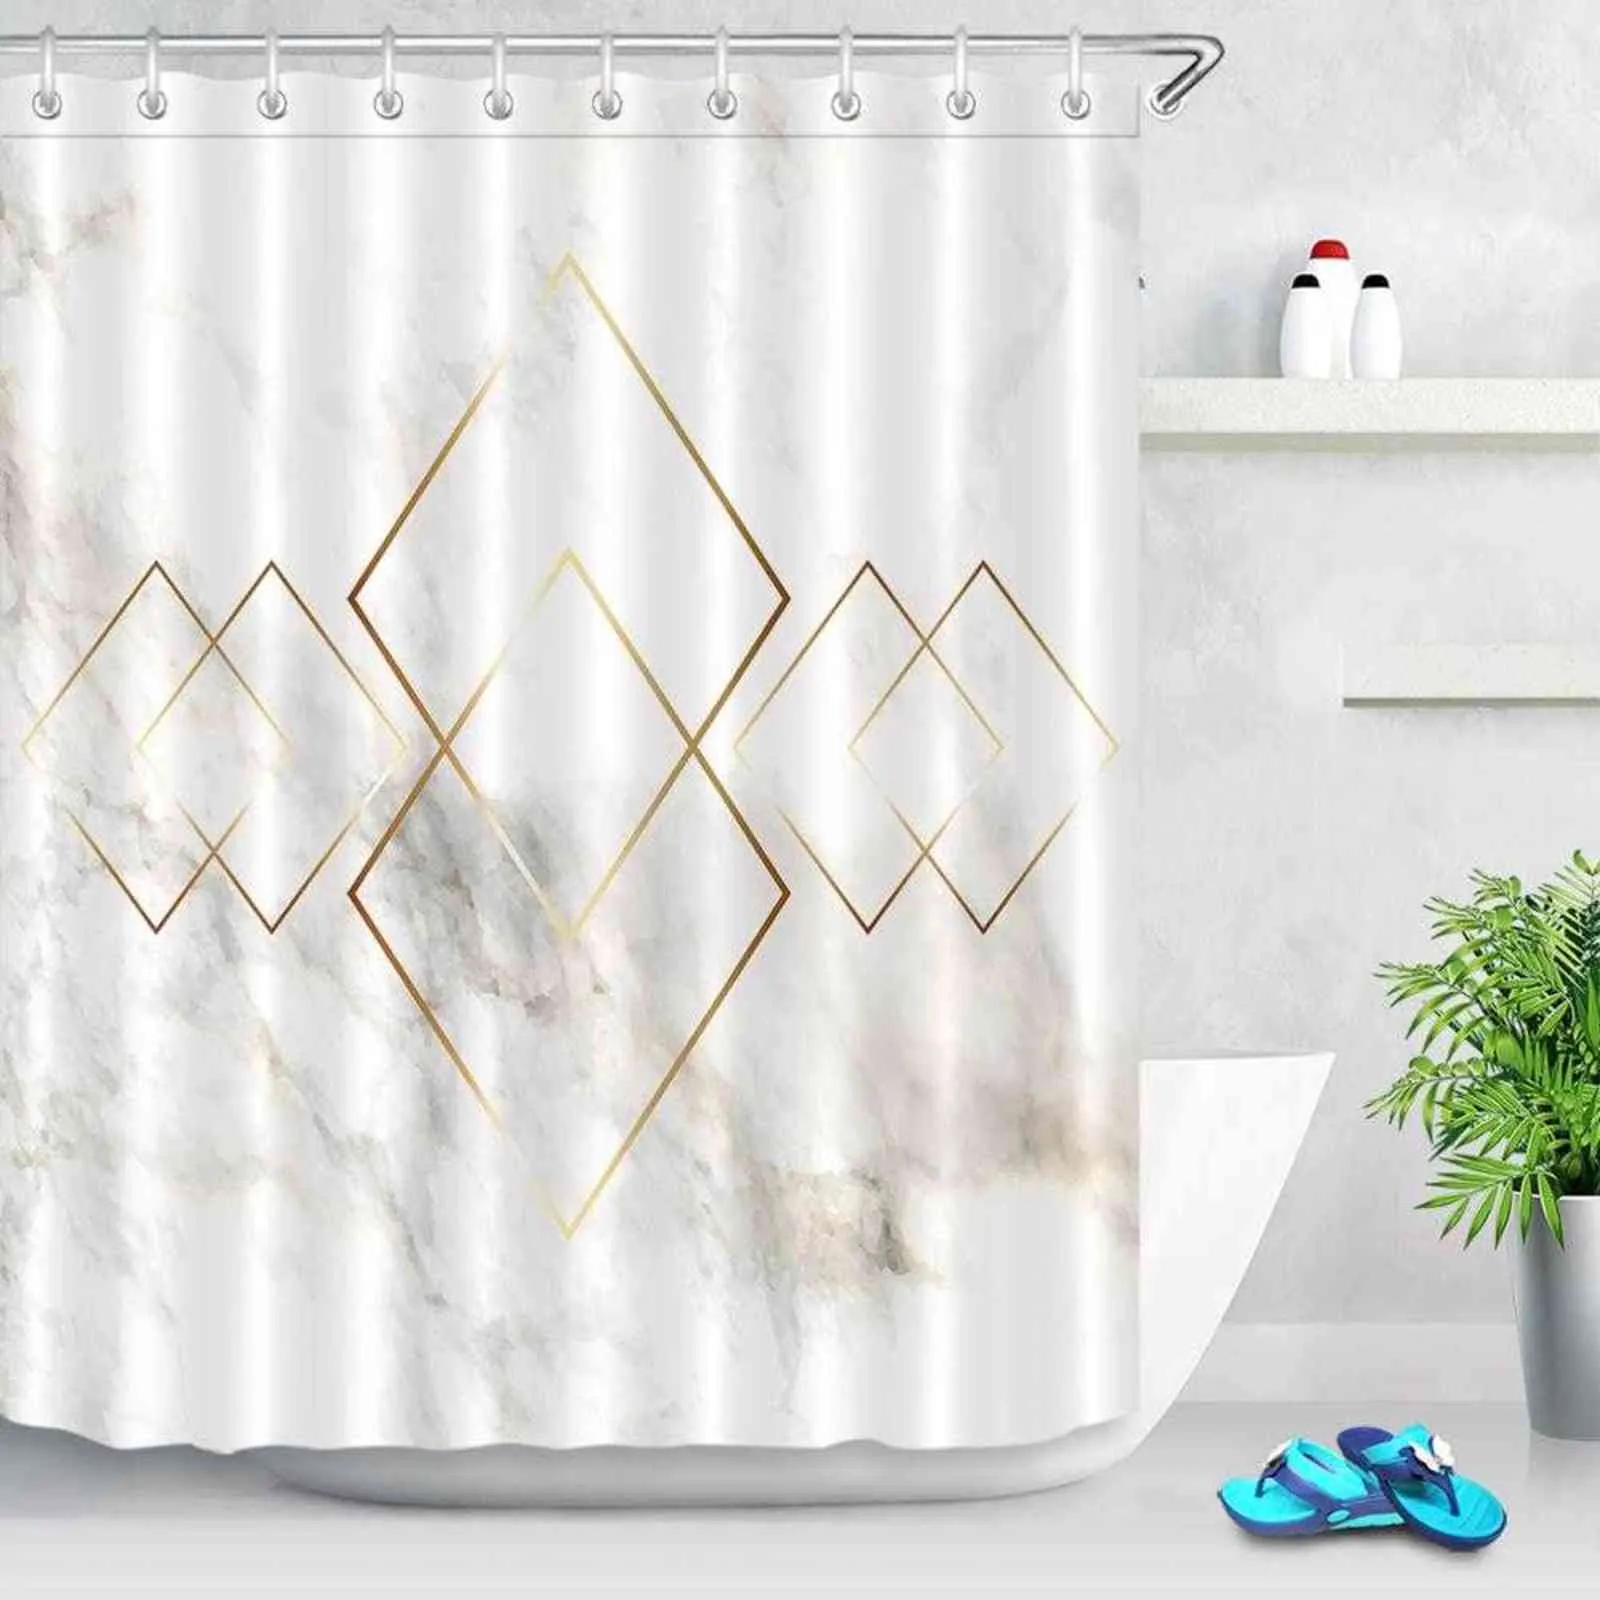 Cortinas de ducha con textura de mármol nórdico rombo geométrico dorado cortina de baño tela de poliéster impermeable para decoración de bañera 211116